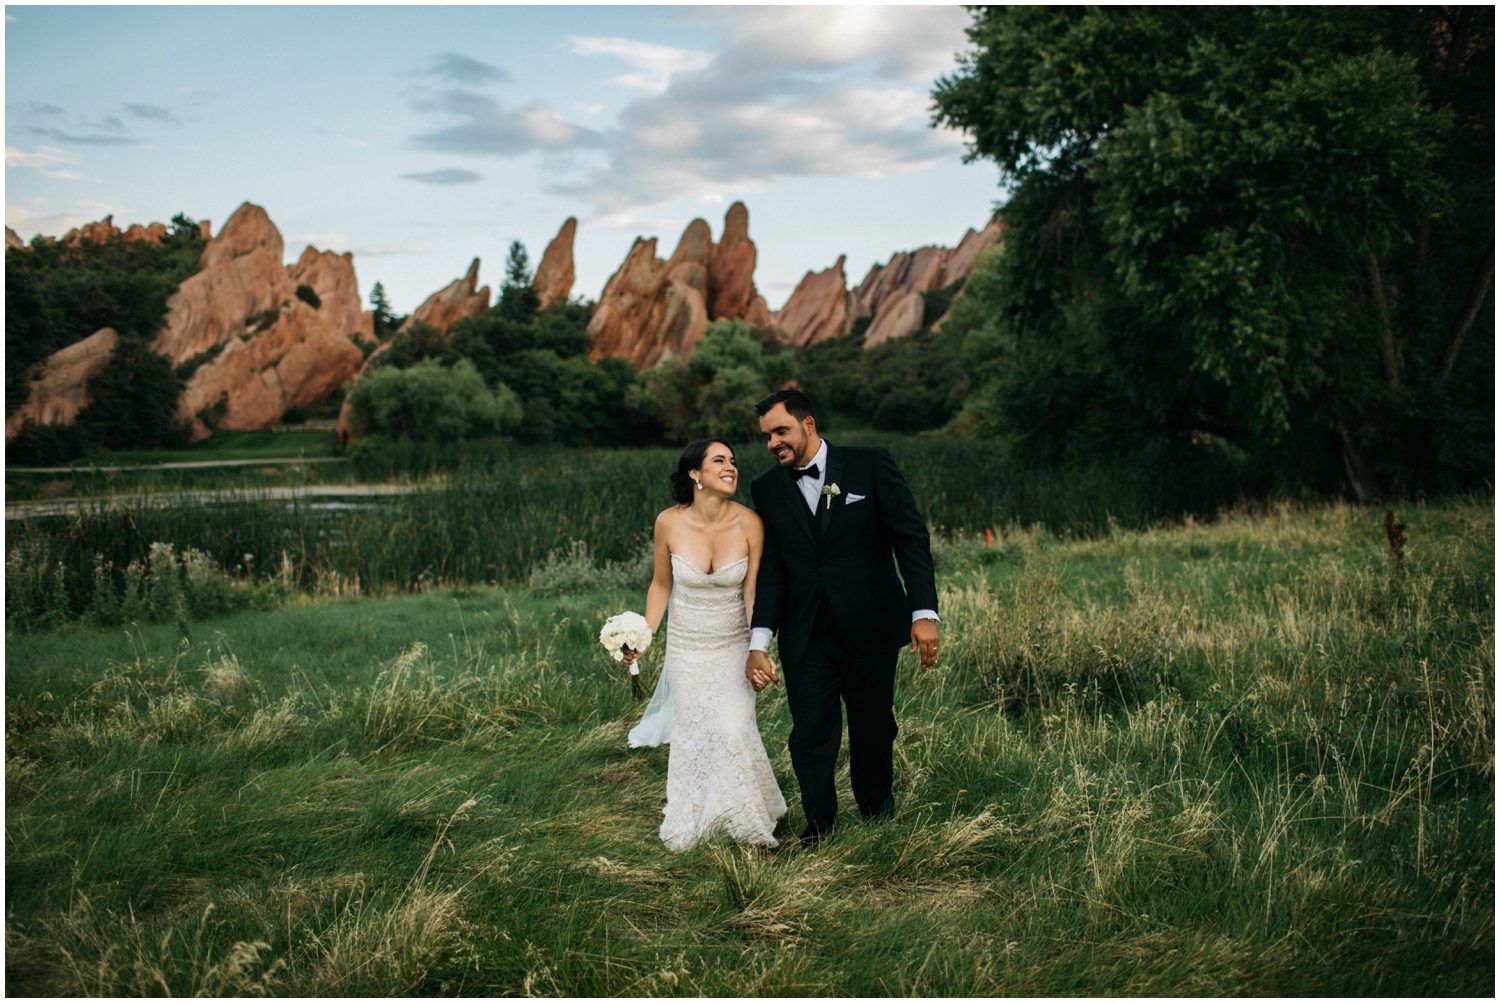 Arrowhead Golf Club Wedding Ceremony, Arrowhead Golf Club Wedding Photos, Colorado wedding photographer